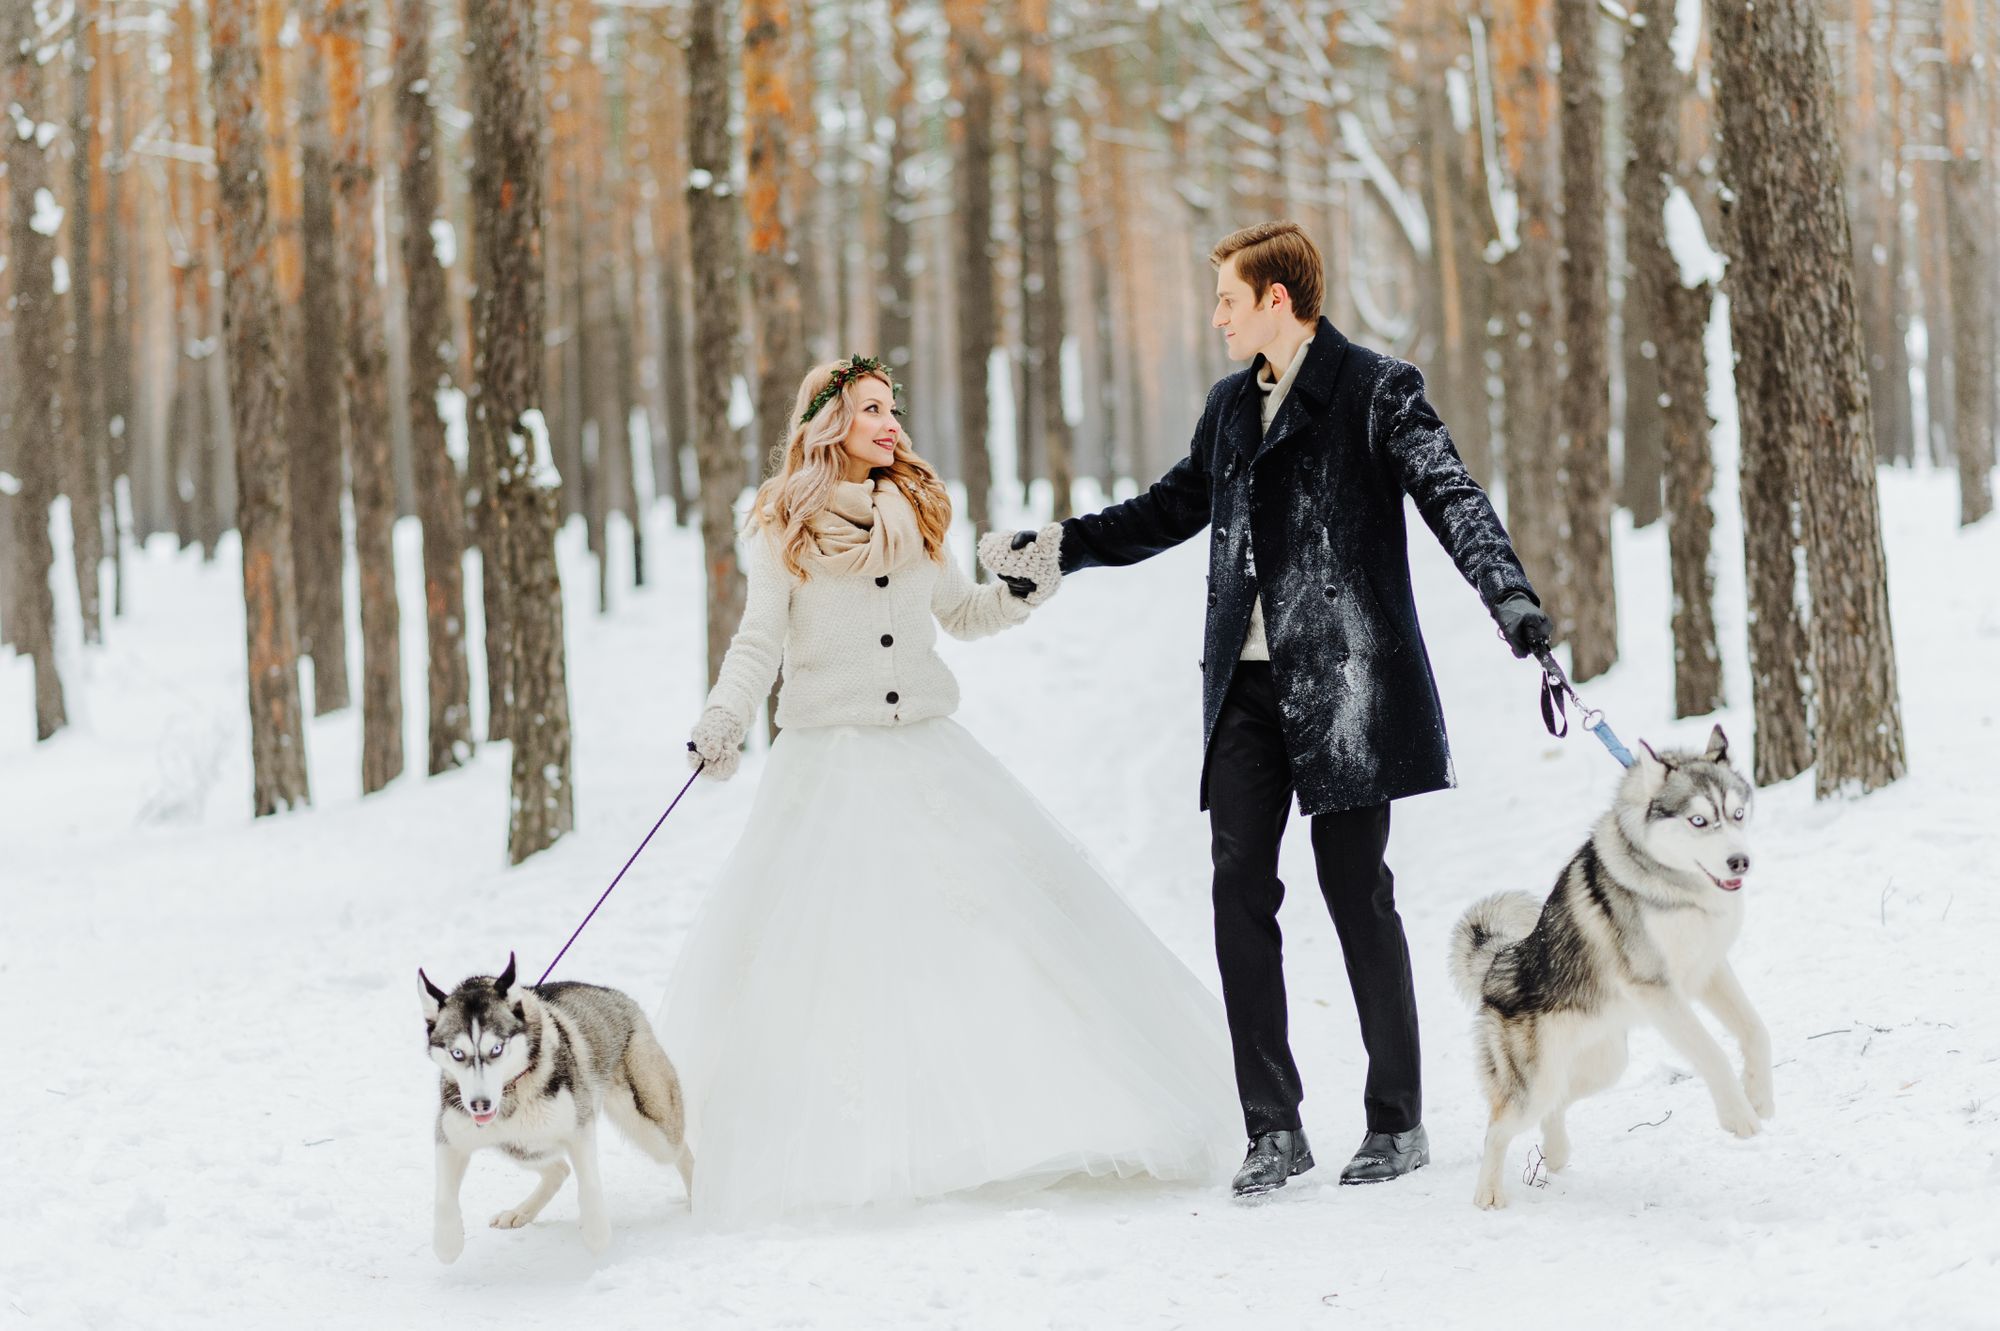 Braut und Bräutigam gehen mit Husky-Hunden im Schnee spazieren.